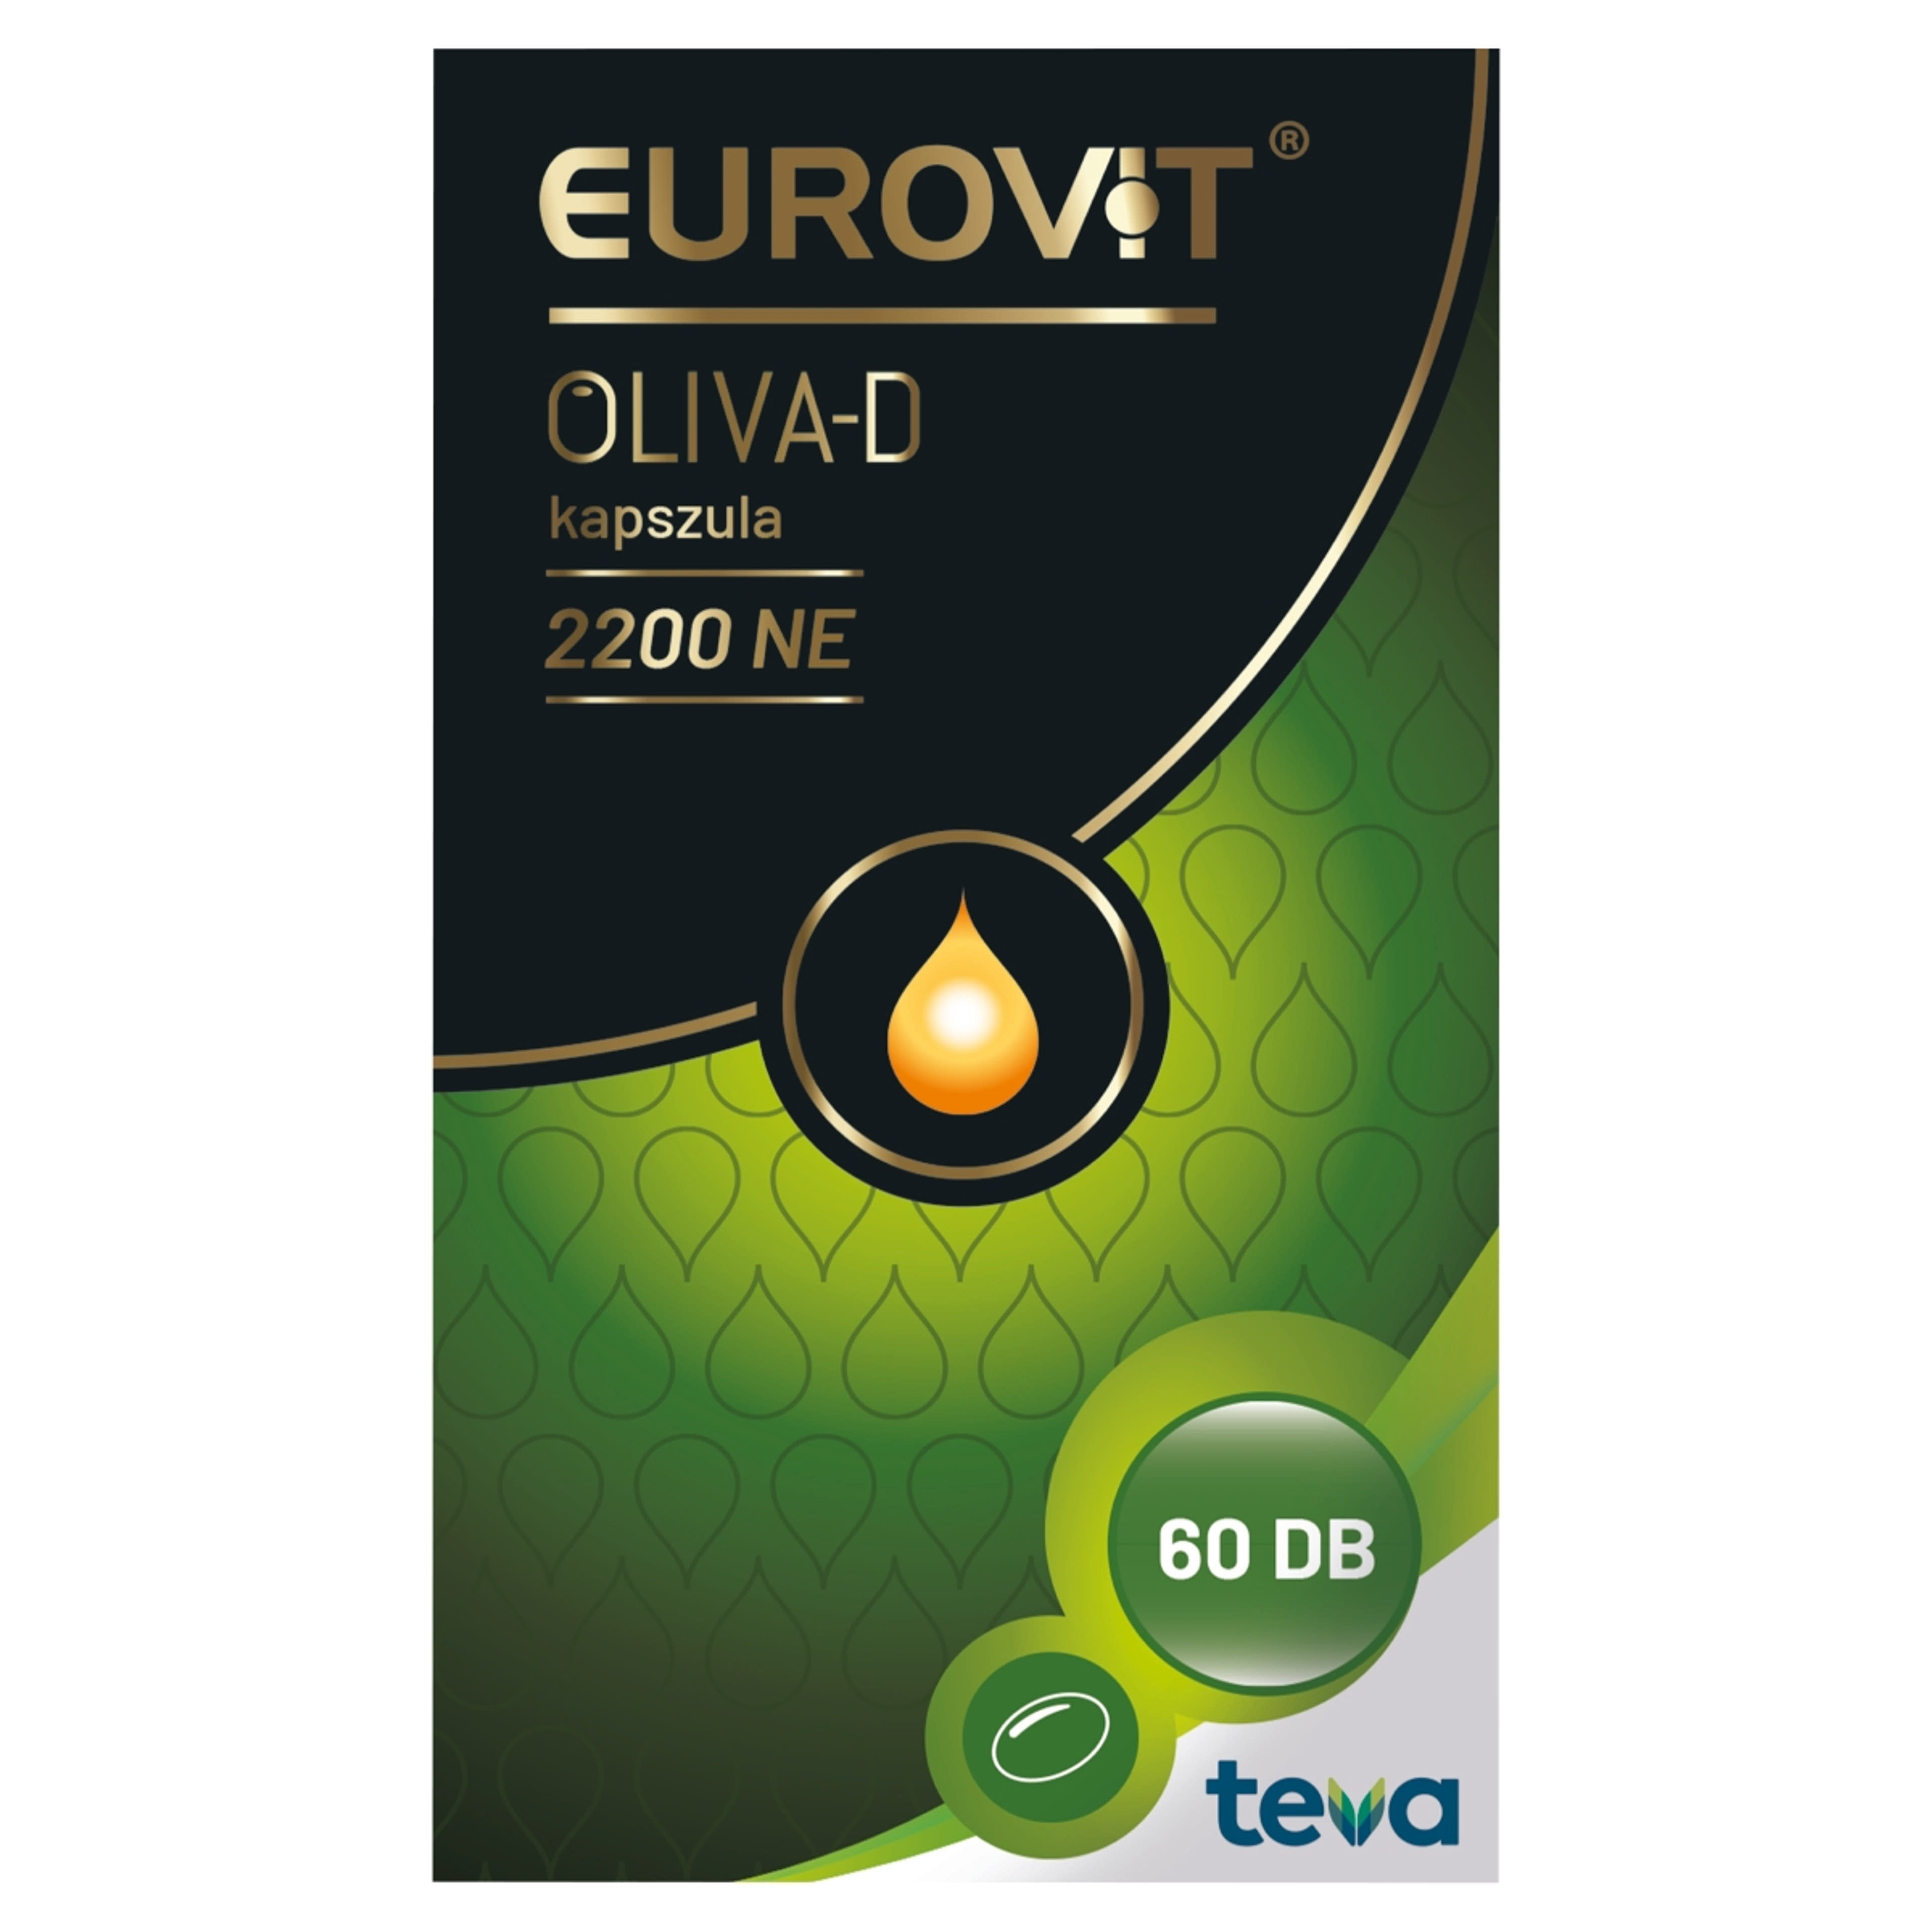 Eurovit oliva-d 2200Ne kapszula - 60 db